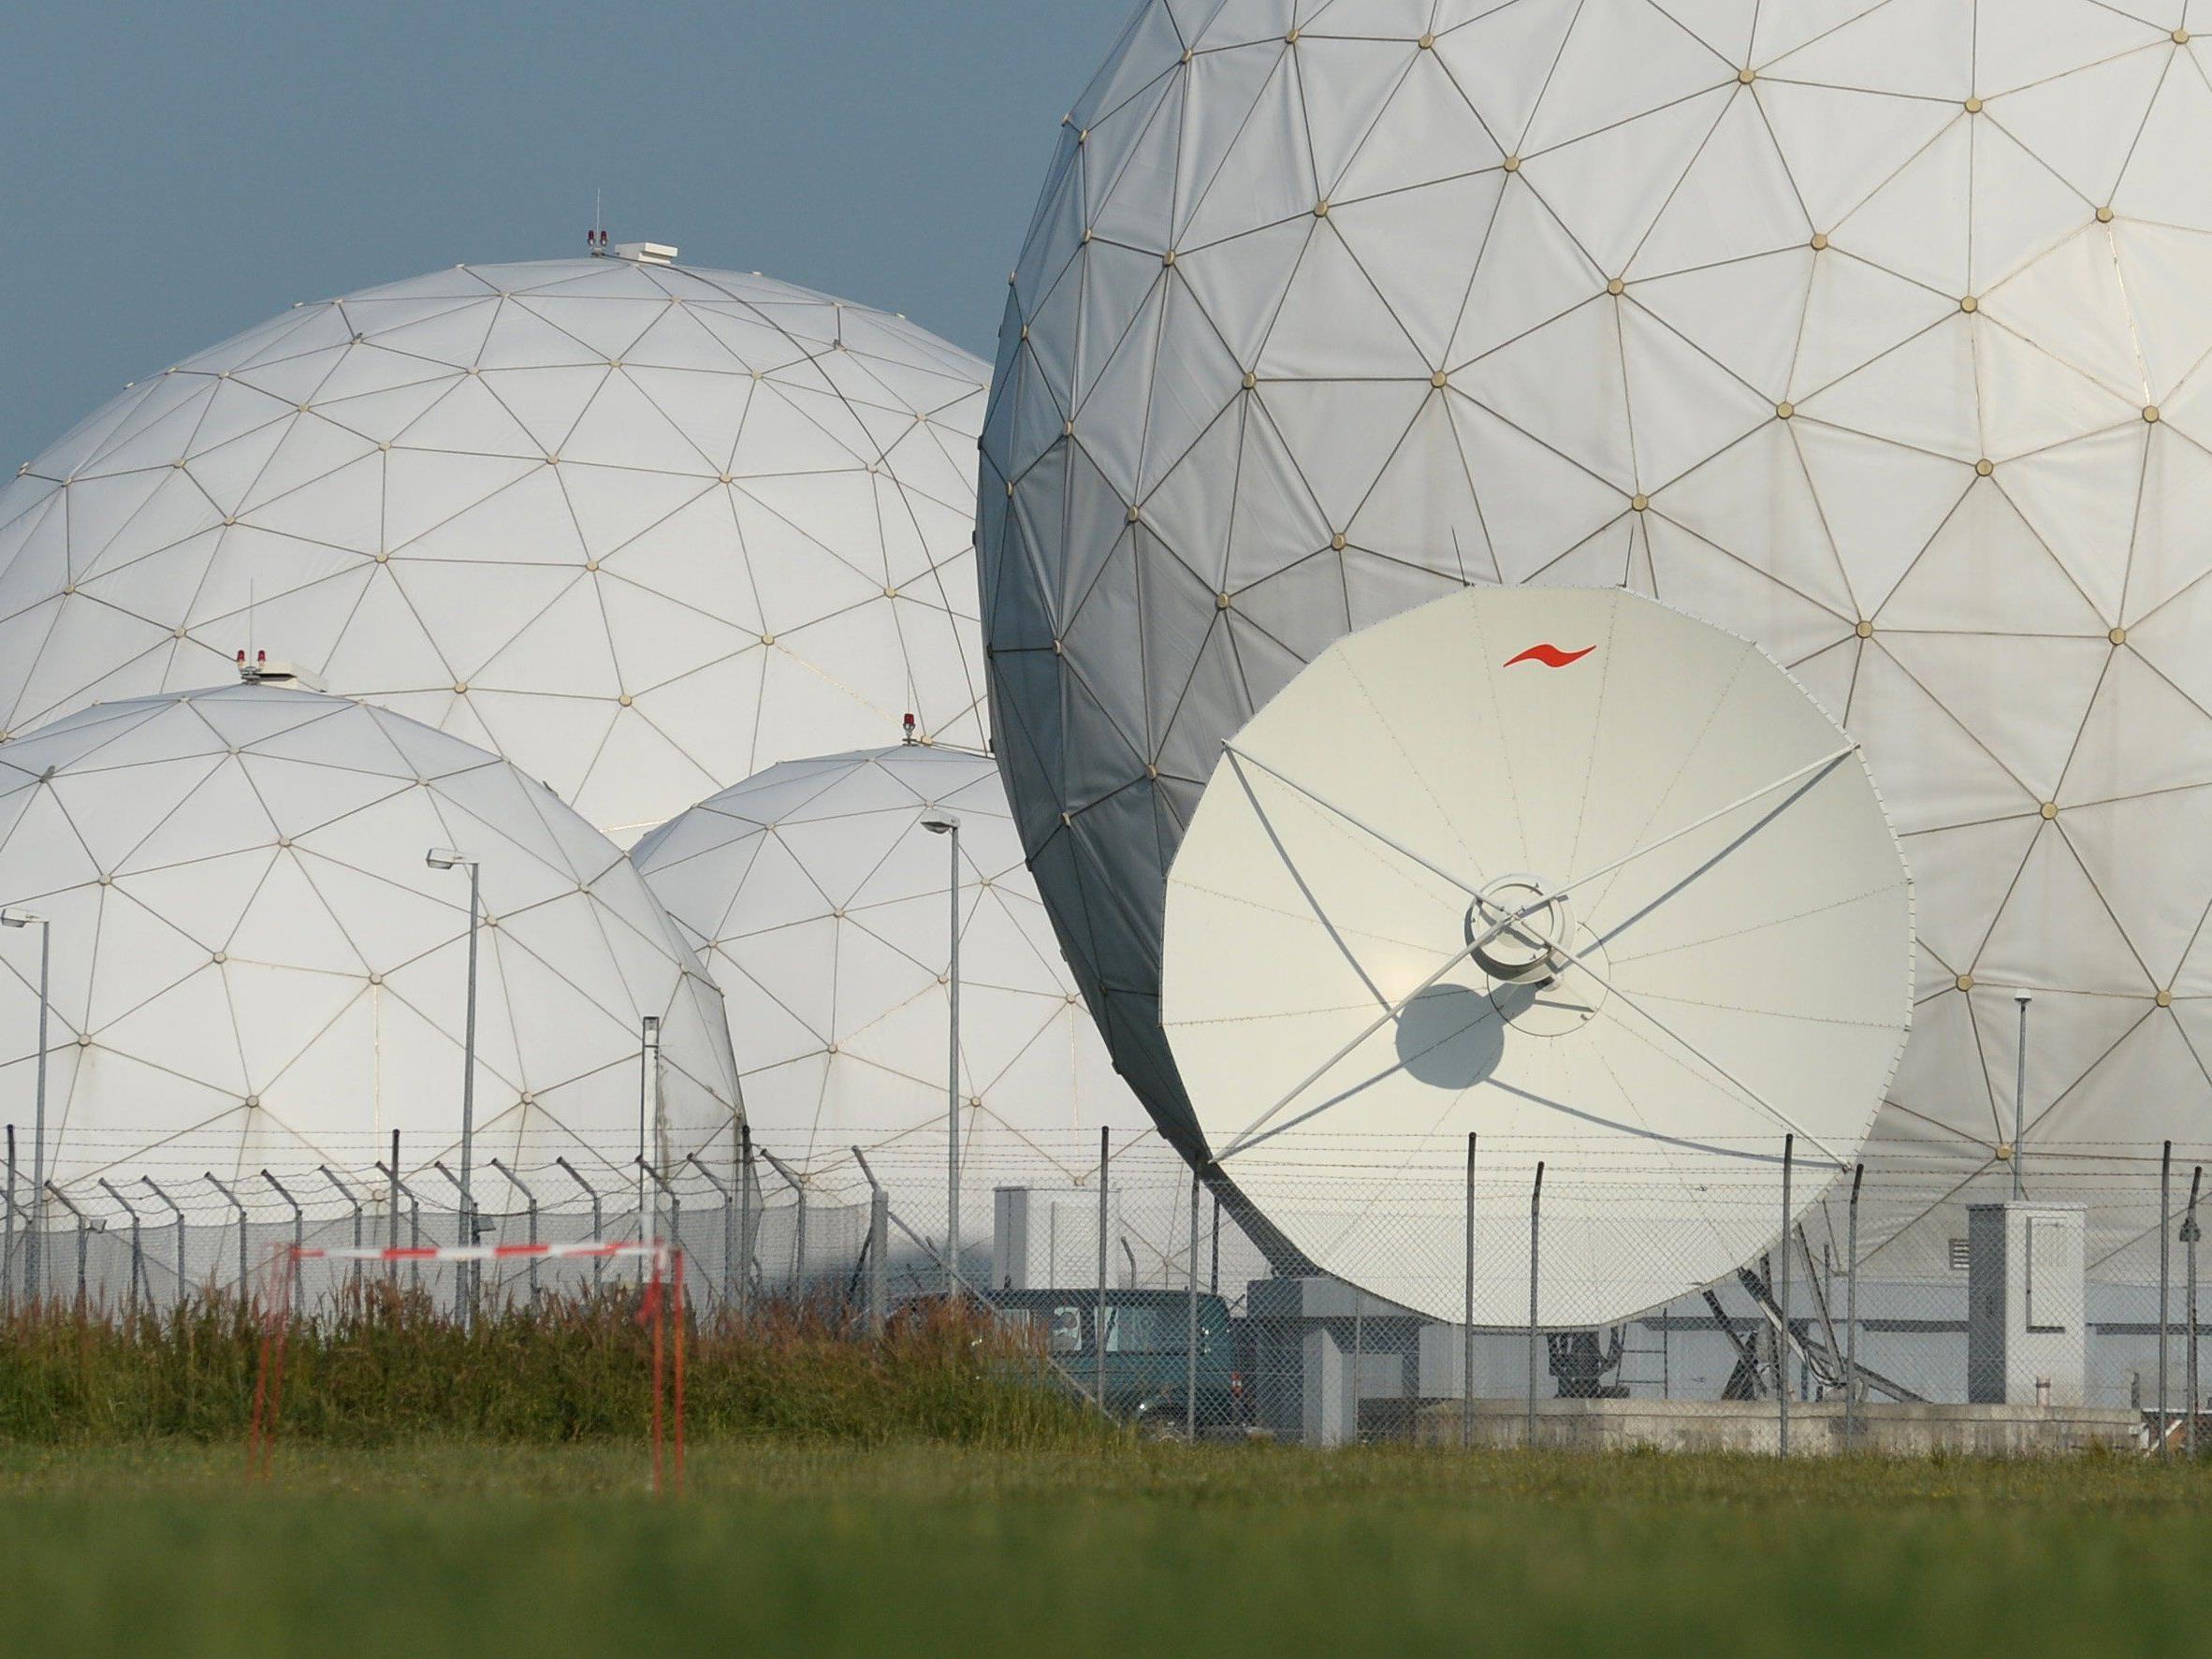 Radarkuppeln (Radome) auf dem Gelände der Abhörstation des Bundesnachrichtendienstes (BND) in Bayern.